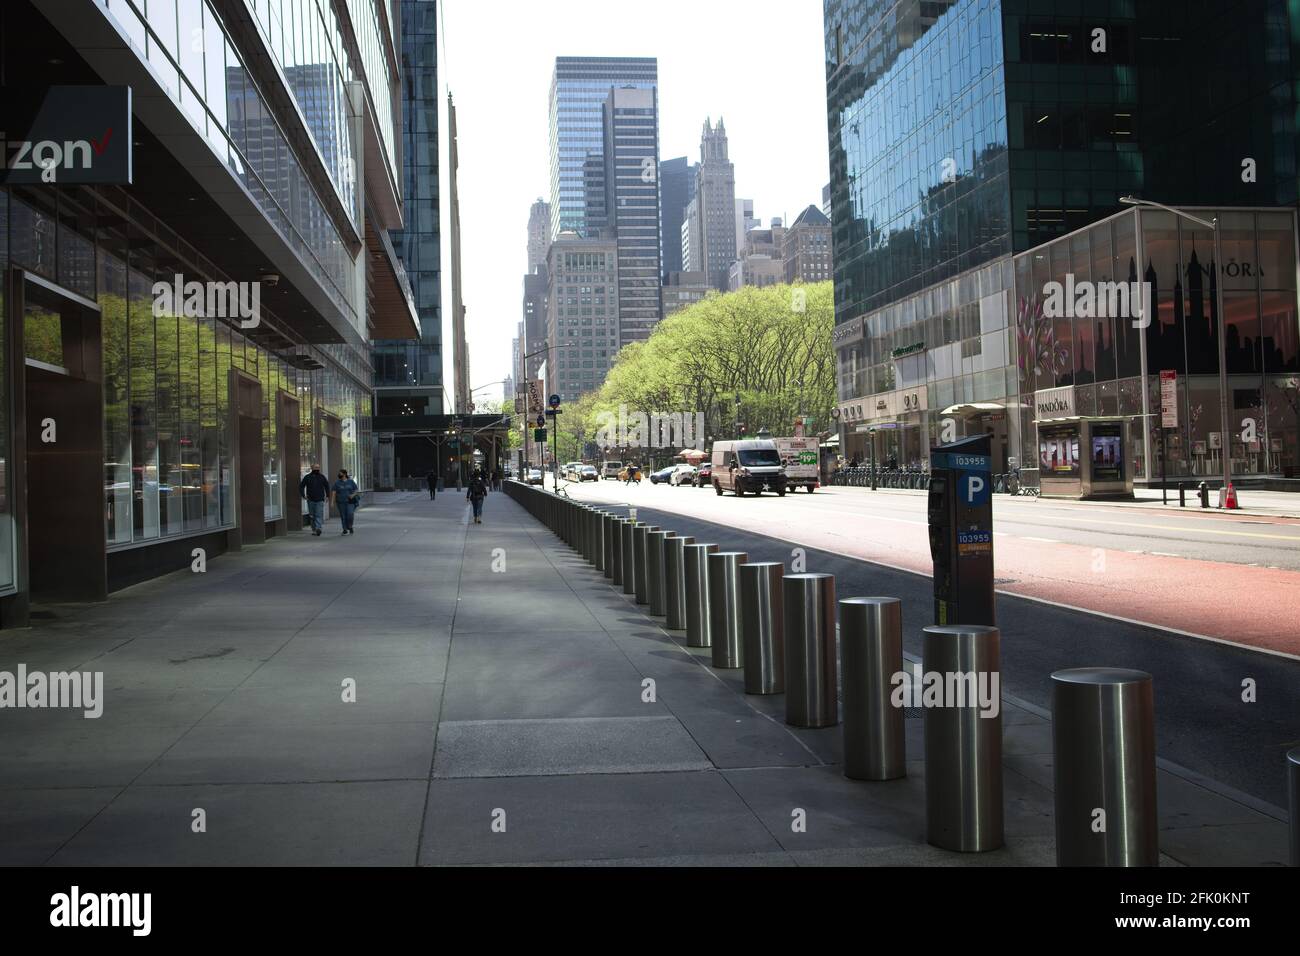 New York, NY, USA - 26. Apr 2021: Poller entlang des Bürgersteiges auf der West 42nd Street, die am frühen Morgen gesehen werden Stockfoto